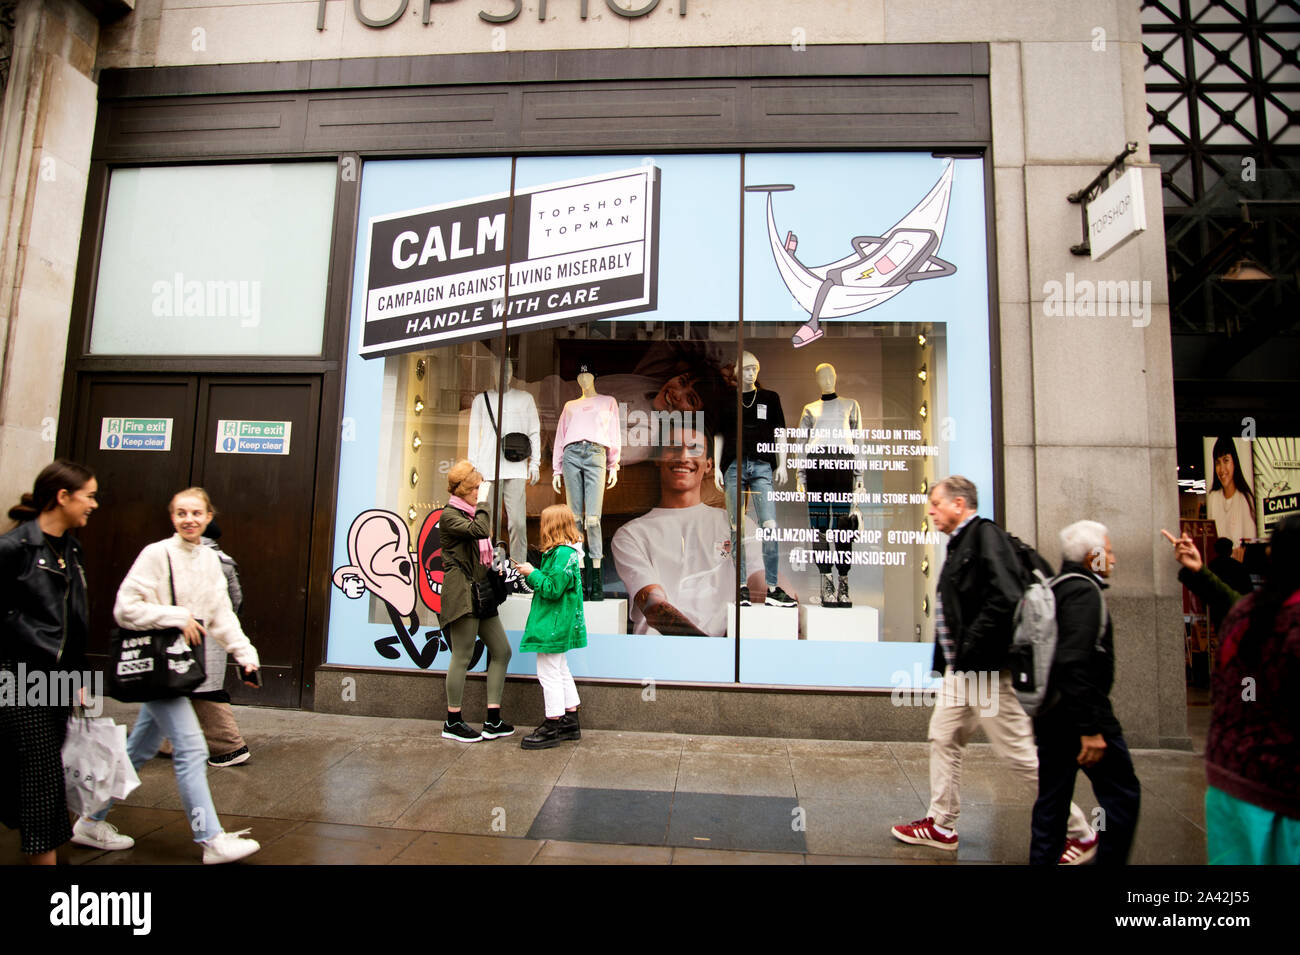 Londres, Oxford Circus. Top Shop publicité fenêtre calme, Campagne contre vivre misérablement - visant à prévenir le suicide. Banque D'Images